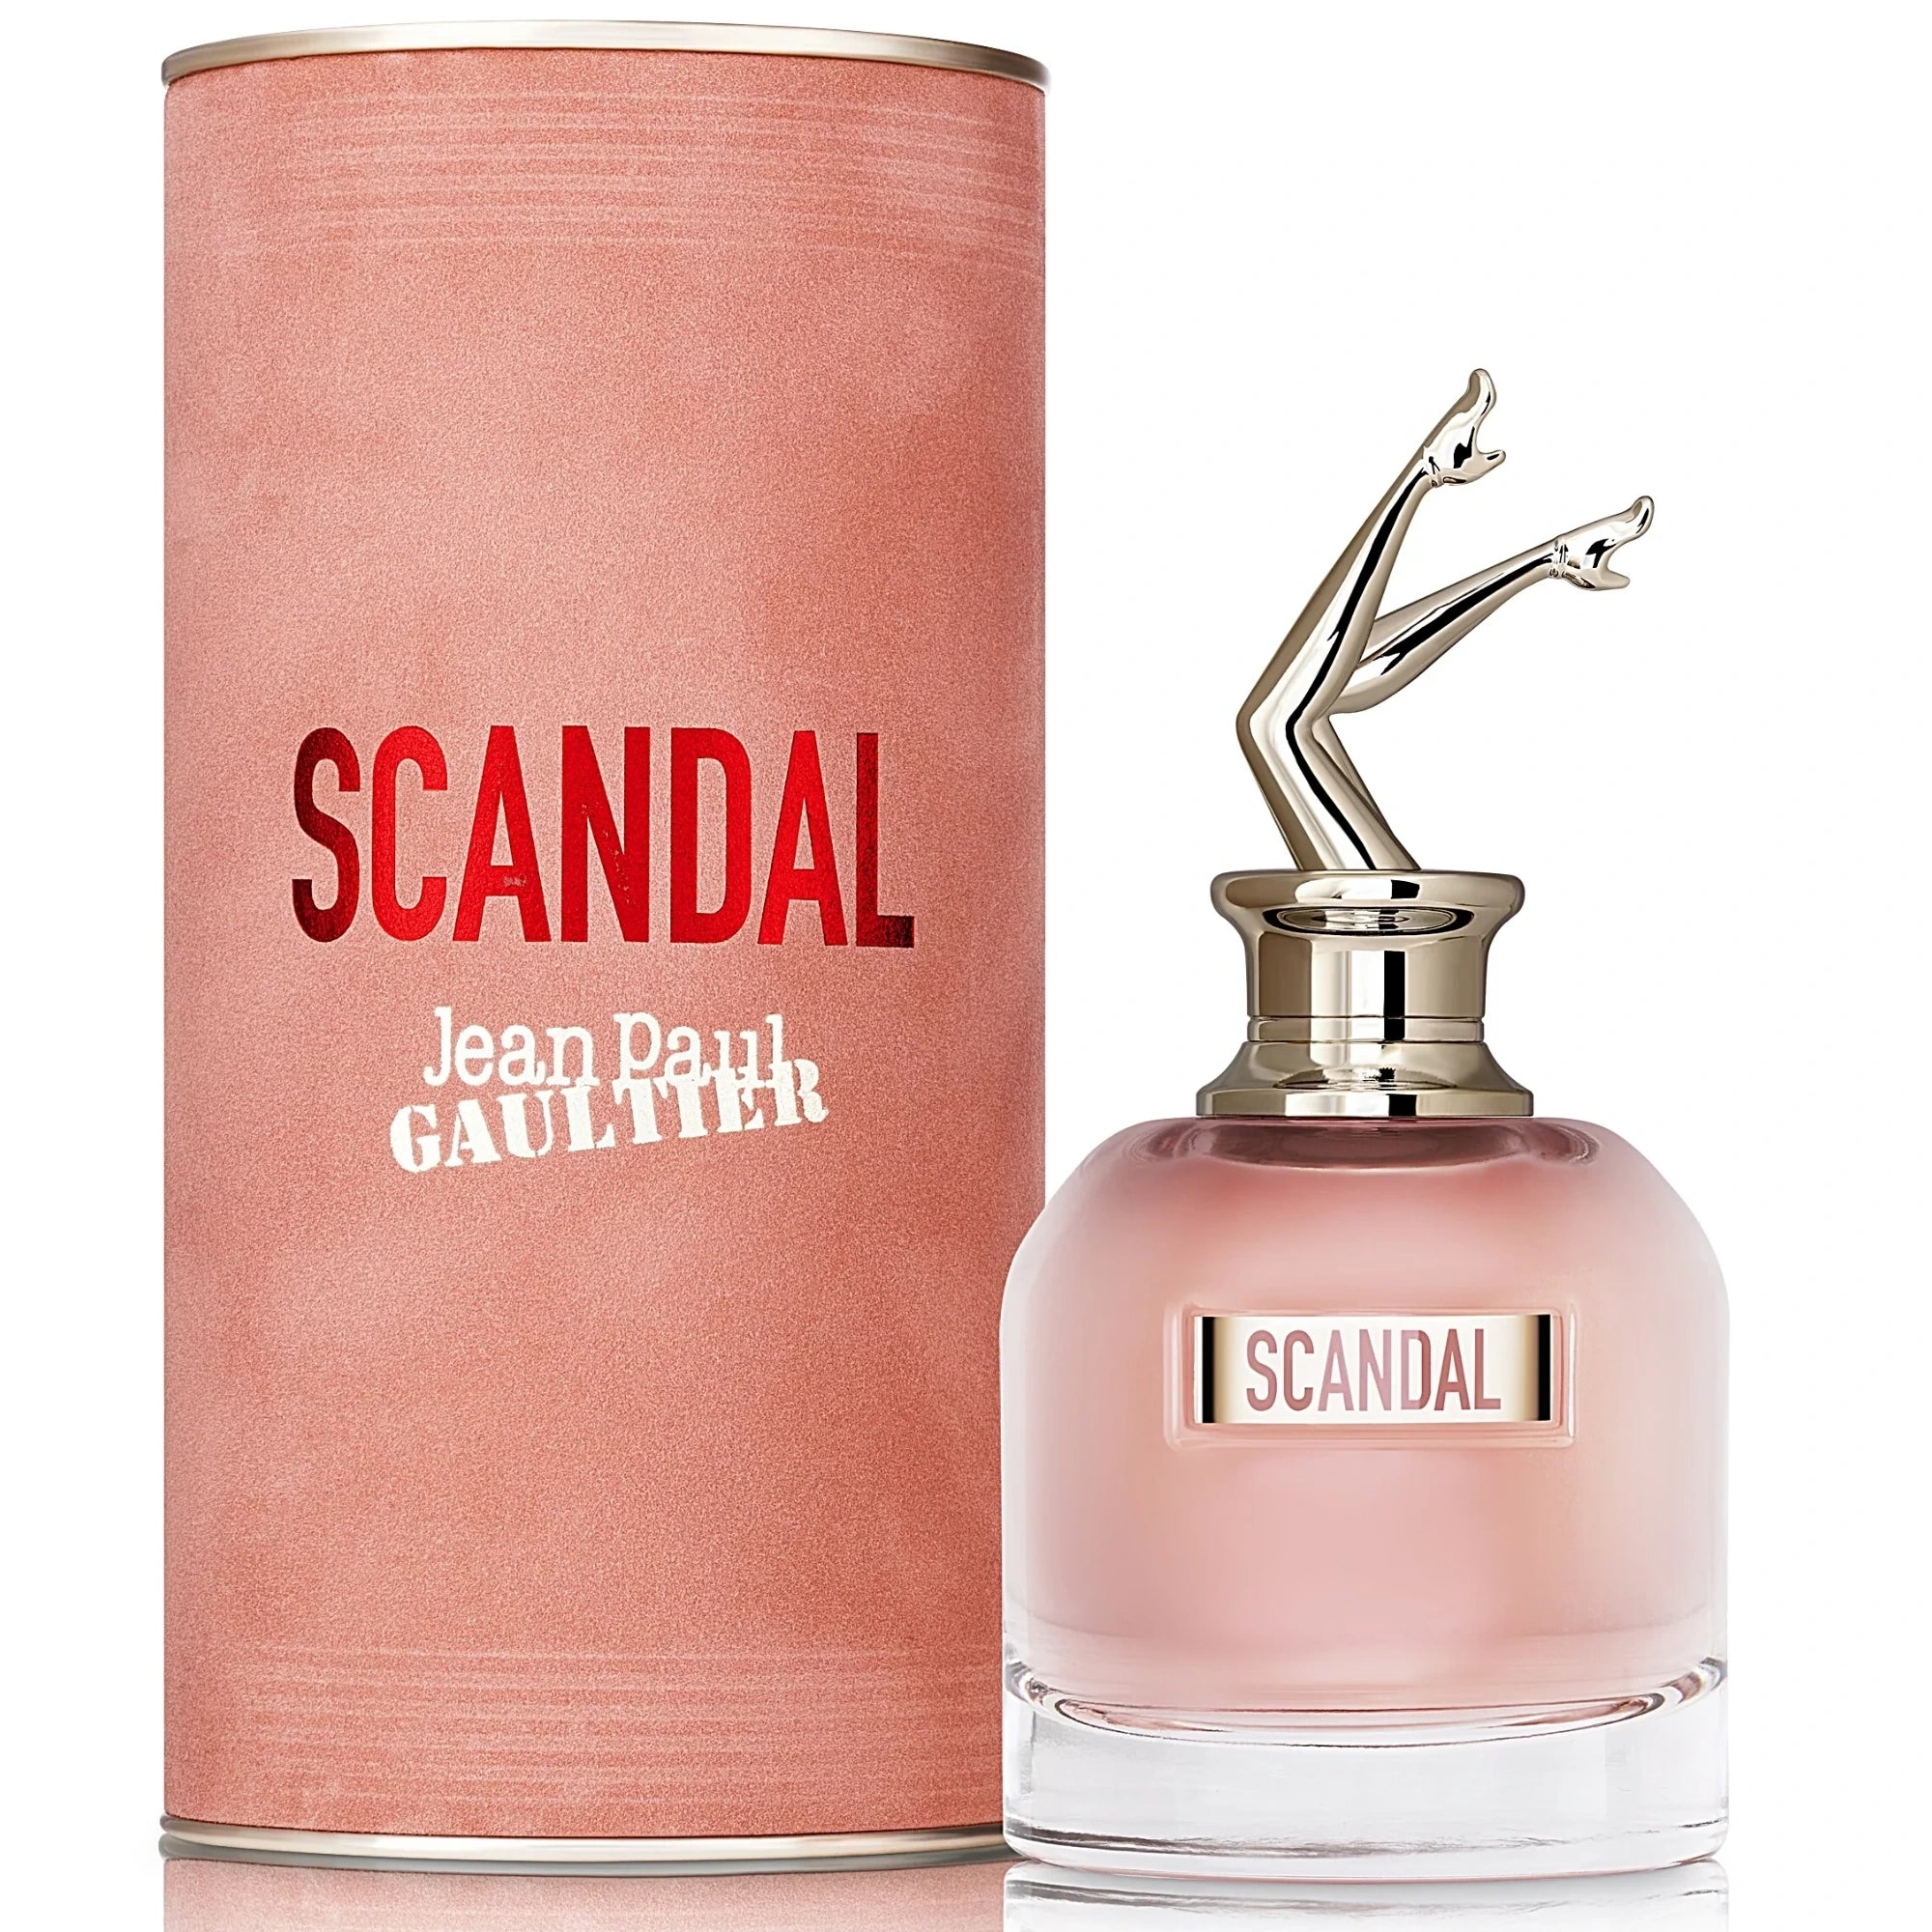 Jean Paul Gaultier Scandal Le Parfum Eau de Parfum Intense Sample